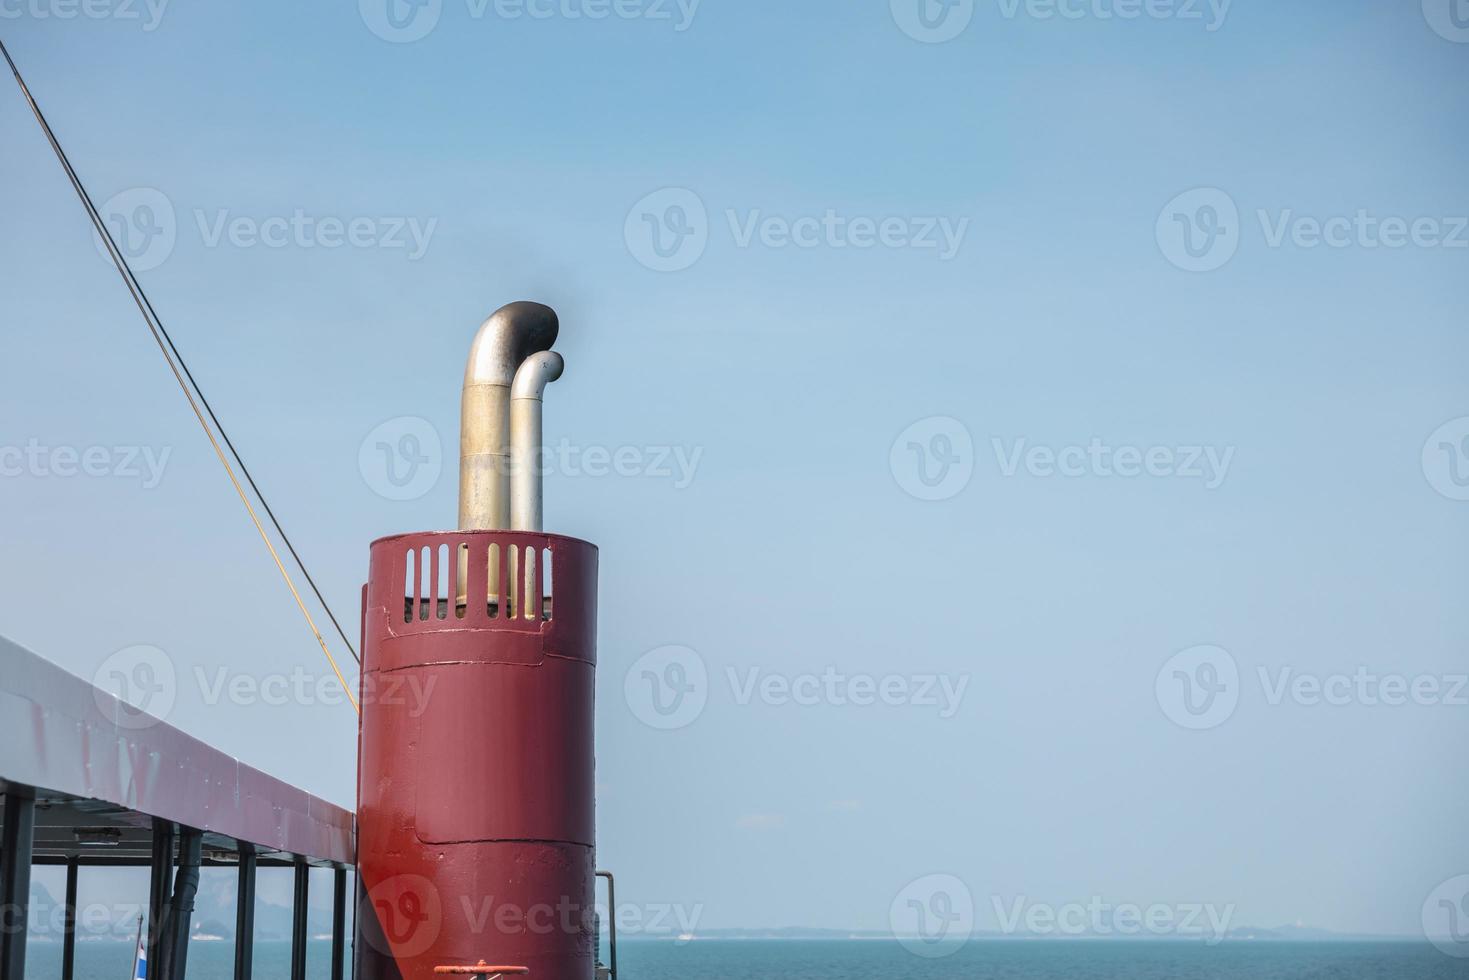 presa del traghetto in thailandia che collega suratthani a kho samui passando sul golfo della thailandia mare. primo piano di ventilatori a cappa per fornire aria fresca ai compartimenti sottocoperta di una barca. foto